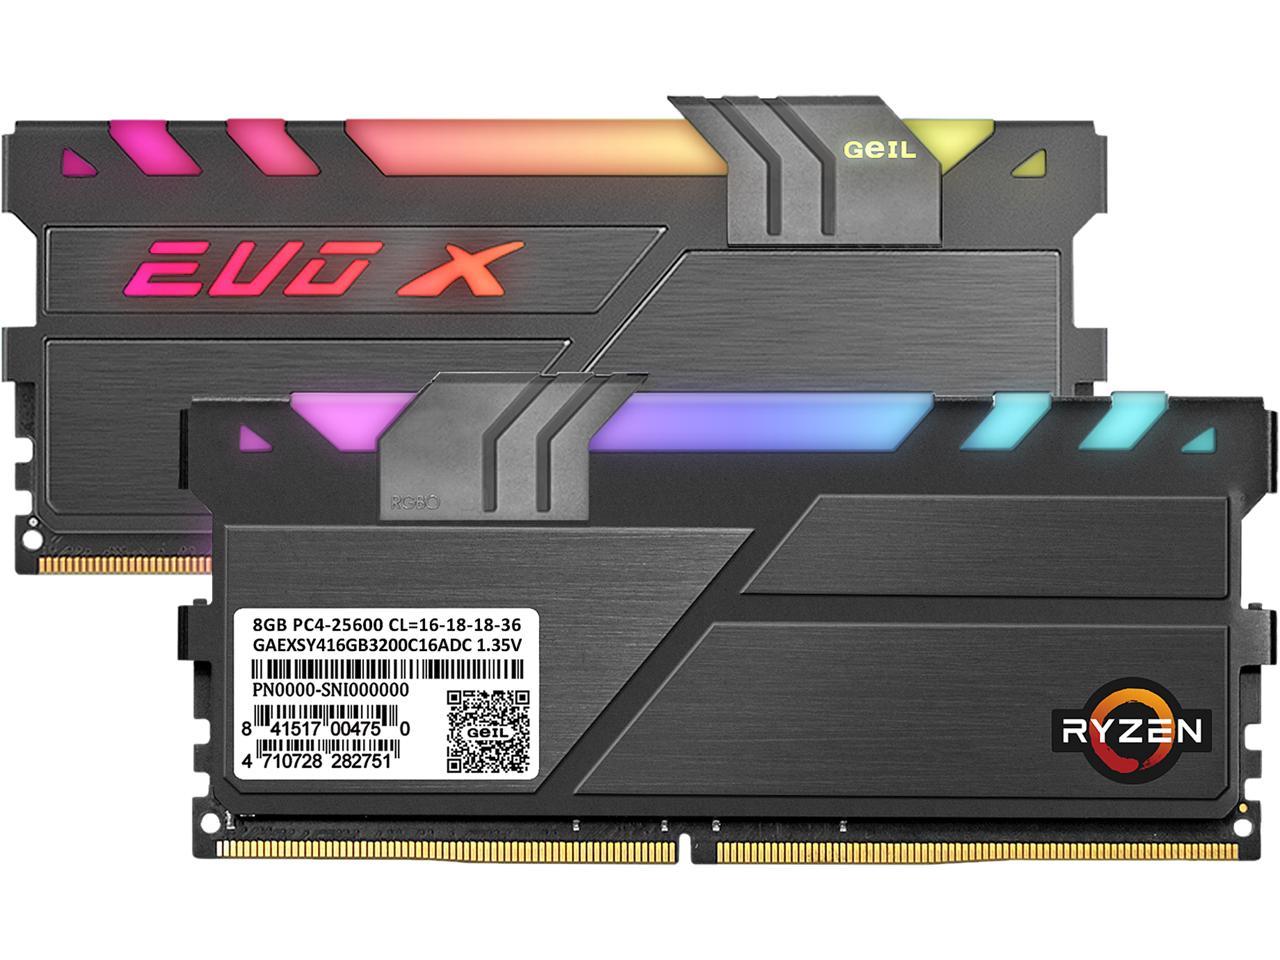 GeIL EVO X II AMD Edition 16GB (2 x 8GB) 288-Pin DDR4 SDRAM DDR4 3200 (PC4 25600) Intel XMP 2.0 Desktop Memory Model GAEXSY416GB3200C16ADC